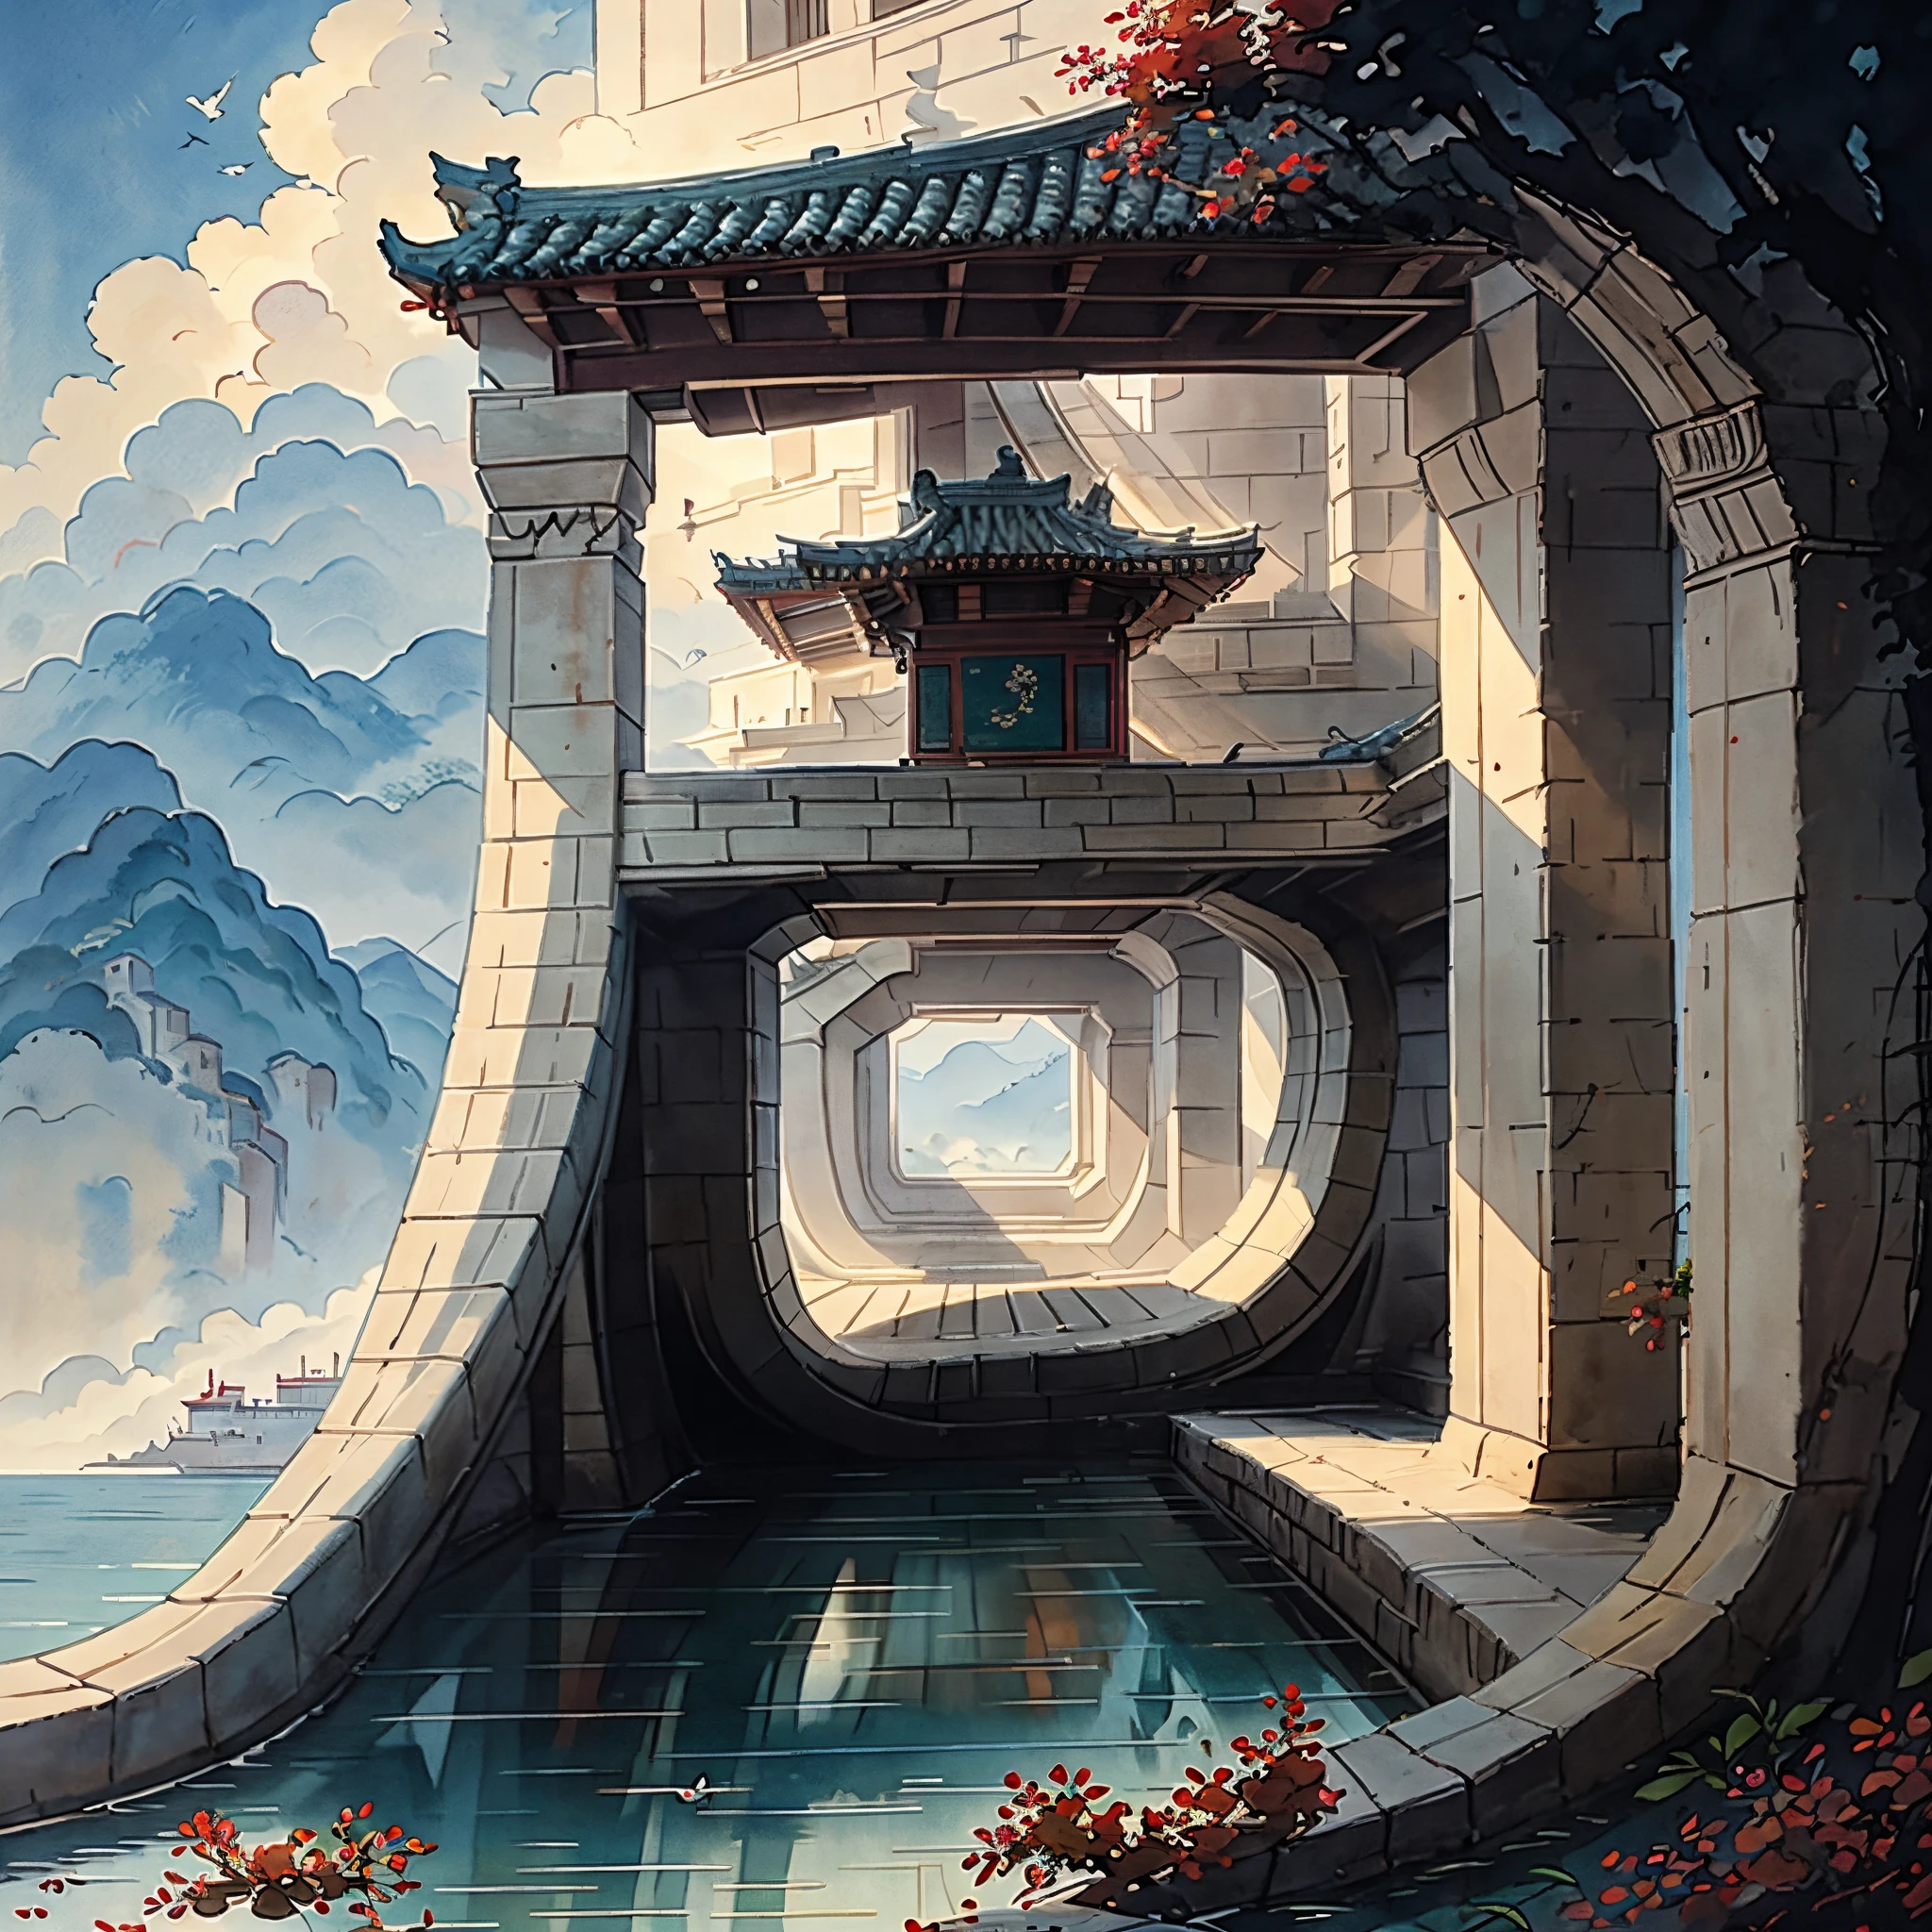 (عمق التأثير الميداني) (مجموعة الهندسة المعمارية الصينية القديمة في جزيرة معزولة), (برج, مبنى) (جناح,أشجار متنوعة, سحاب, اشجار خضراء, اشجار القيقب, أشجار حمراء, الحجارة الصغيرة, الطيور الصغيرة), نمط الألوان المائية الصينية, (أسلوب الرسم الصيني), المناظر الطبيعية الصينية,اللوحات المائية الصينية التقليدية,اللوحات الصينية,ألوان مائية8K, (خواطر), clear boundaries between ضوء وظل, ضوء وظل, ضوء وظل effect, تحفة,تفاصيل فائقة, عمل ملحمي, عالي الجودة, جودة عالية, مفصل جدا, الفن الرسمي, خلفية 8K موحدة, تفاصيل فائقة,التناقض بين الضوء والظلام.